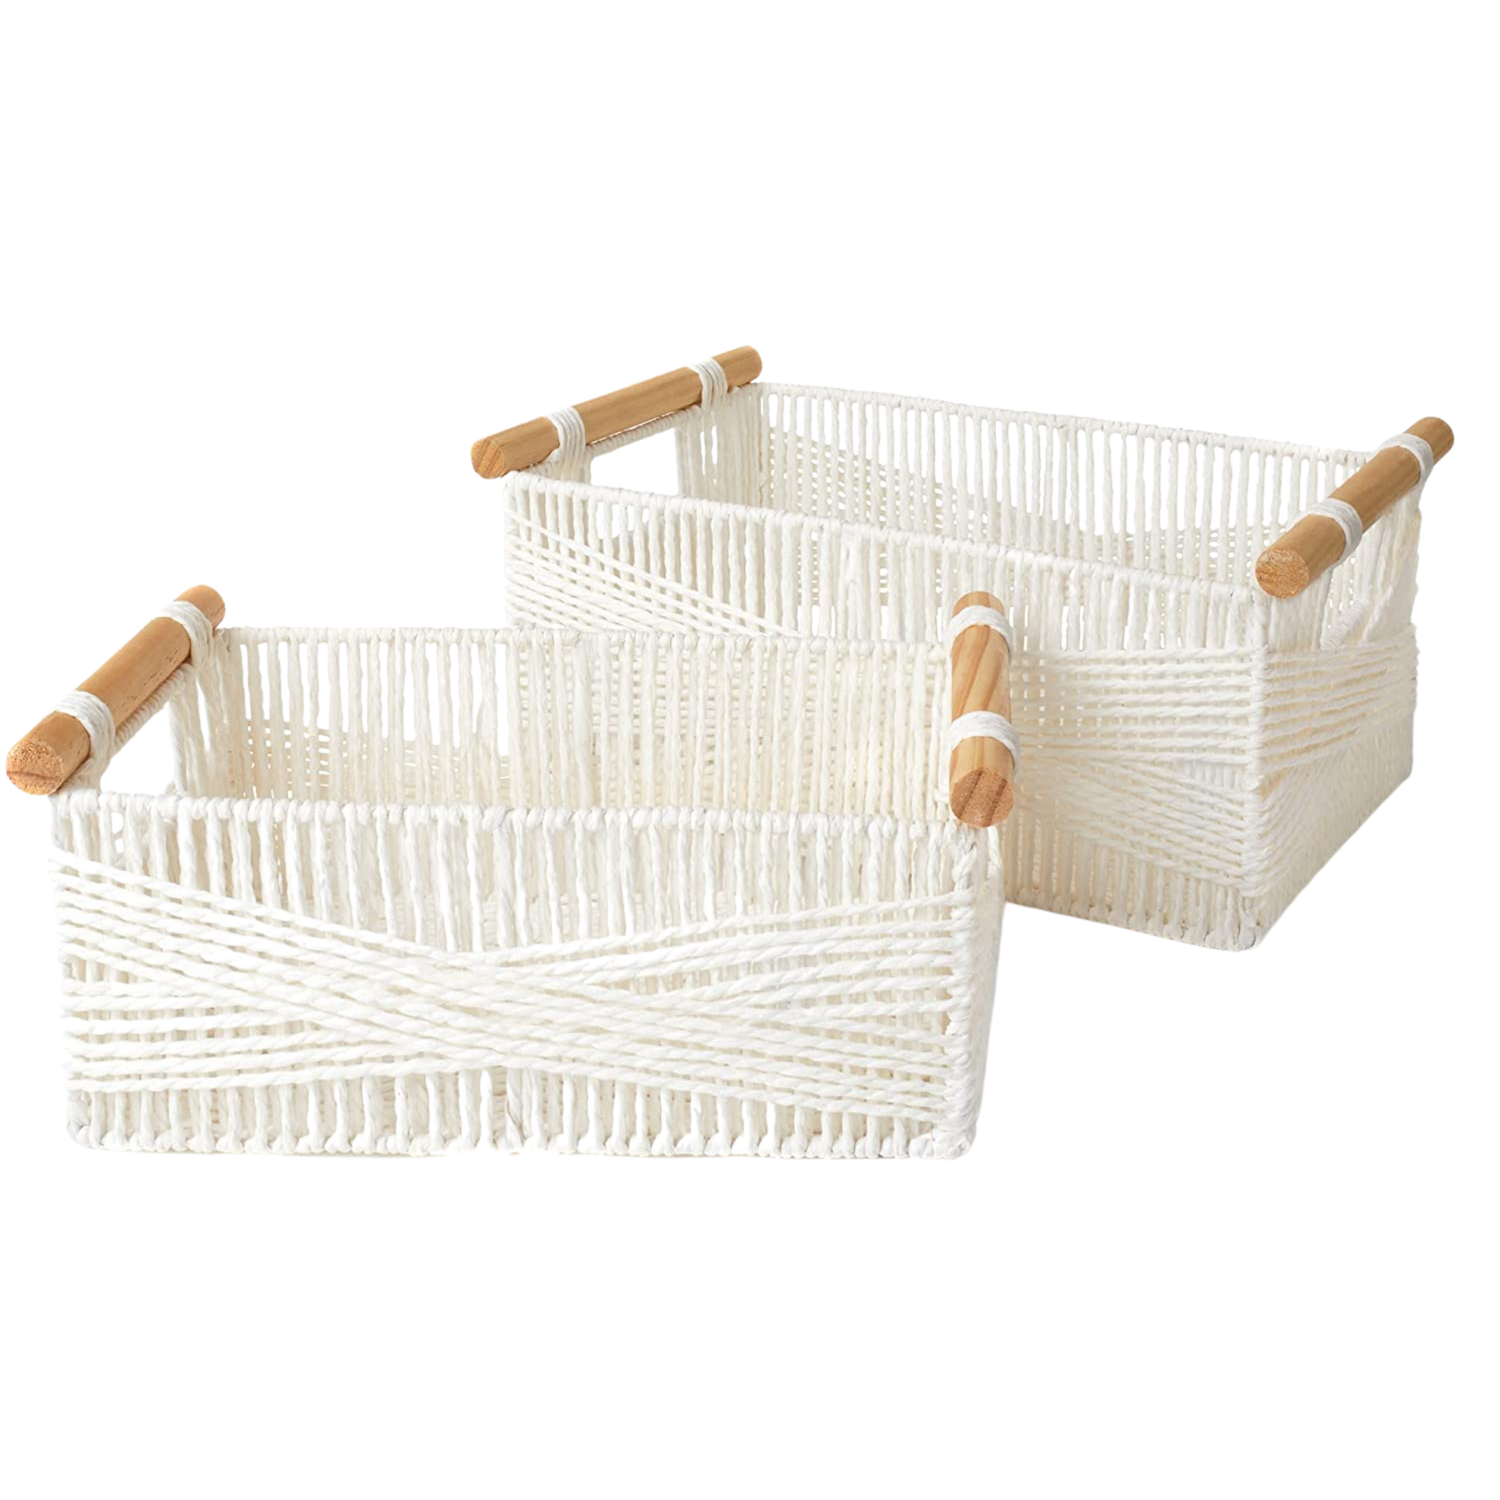 LA JOLIE MUSE Wicker Storage Baskets